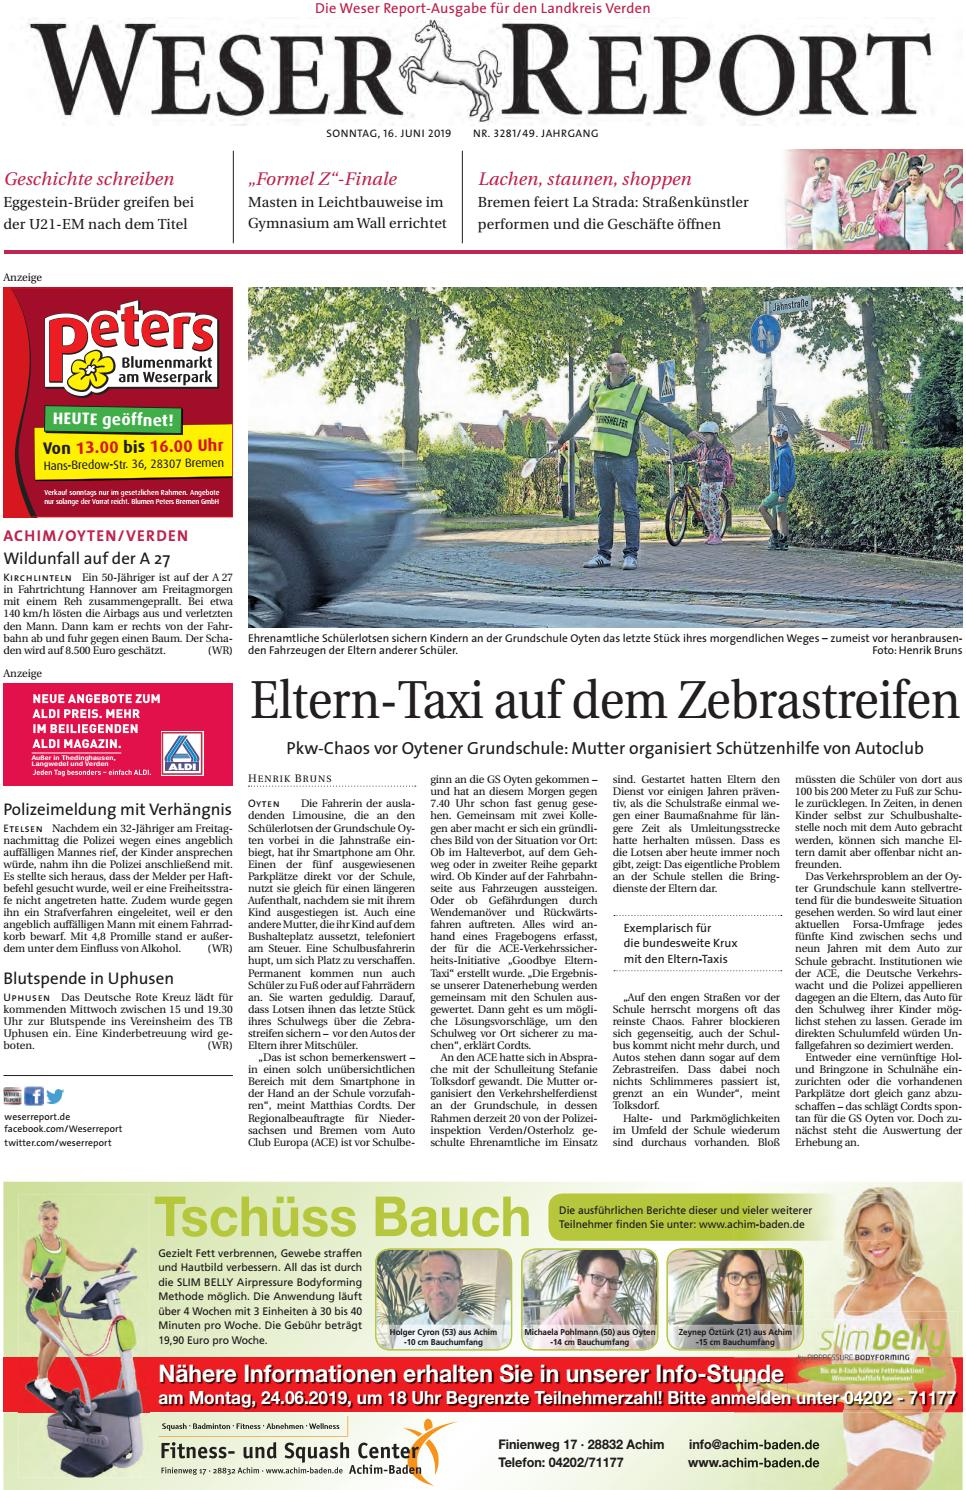 Weser Report - Achim, Oyten, Verden Vom 16.06.2019 By Kps ... à Lame.comde Cumaru